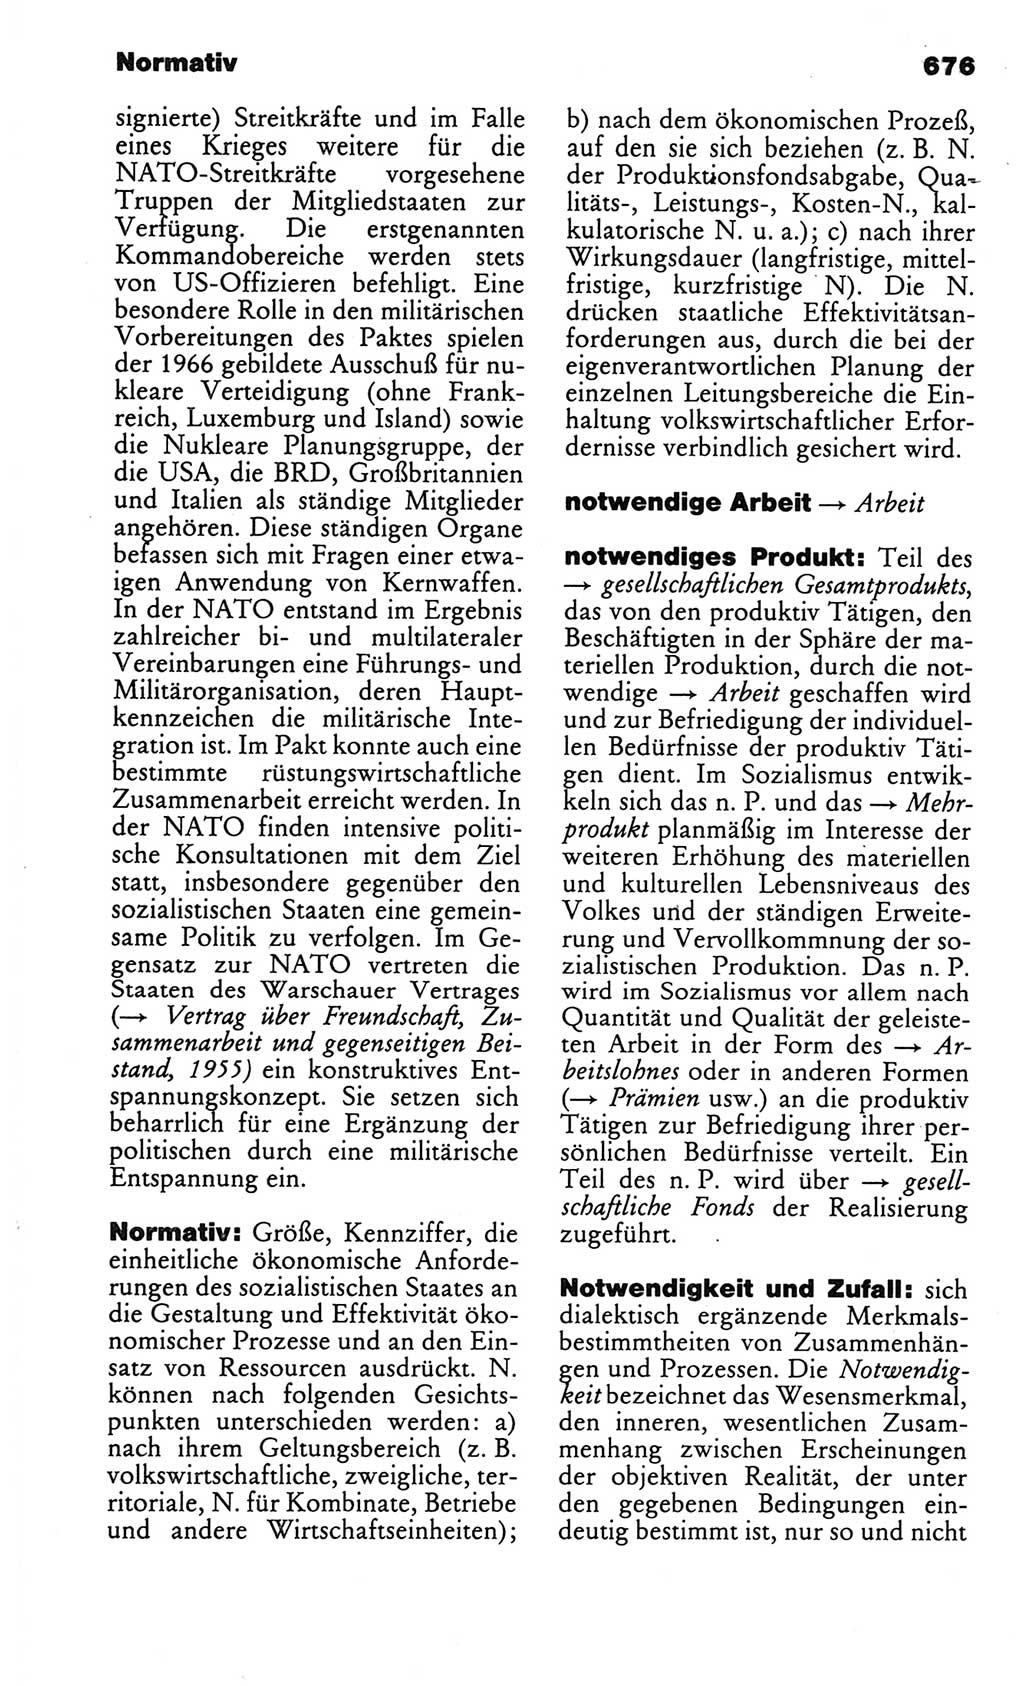 Kleines politisches Wörterbuch [Deutsche Demokratische Republik (DDR)] 1986, Seite 676 (Kl. pol. Wb. DDR 1986, S. 676)